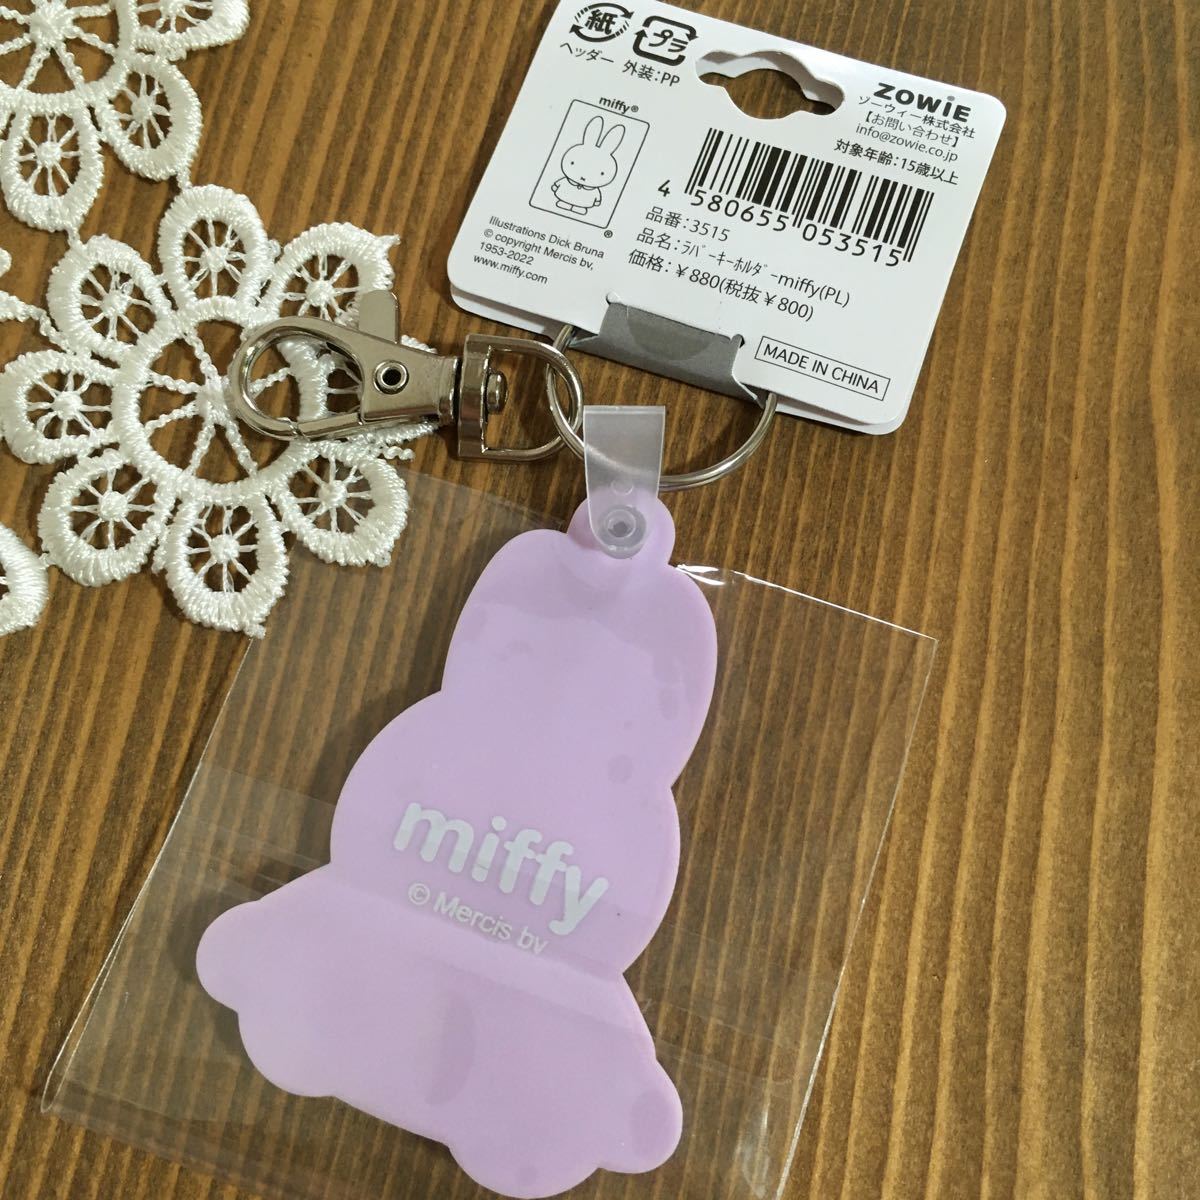  Miffy Raver key holder key holder key ring postage 120 new goods purple 